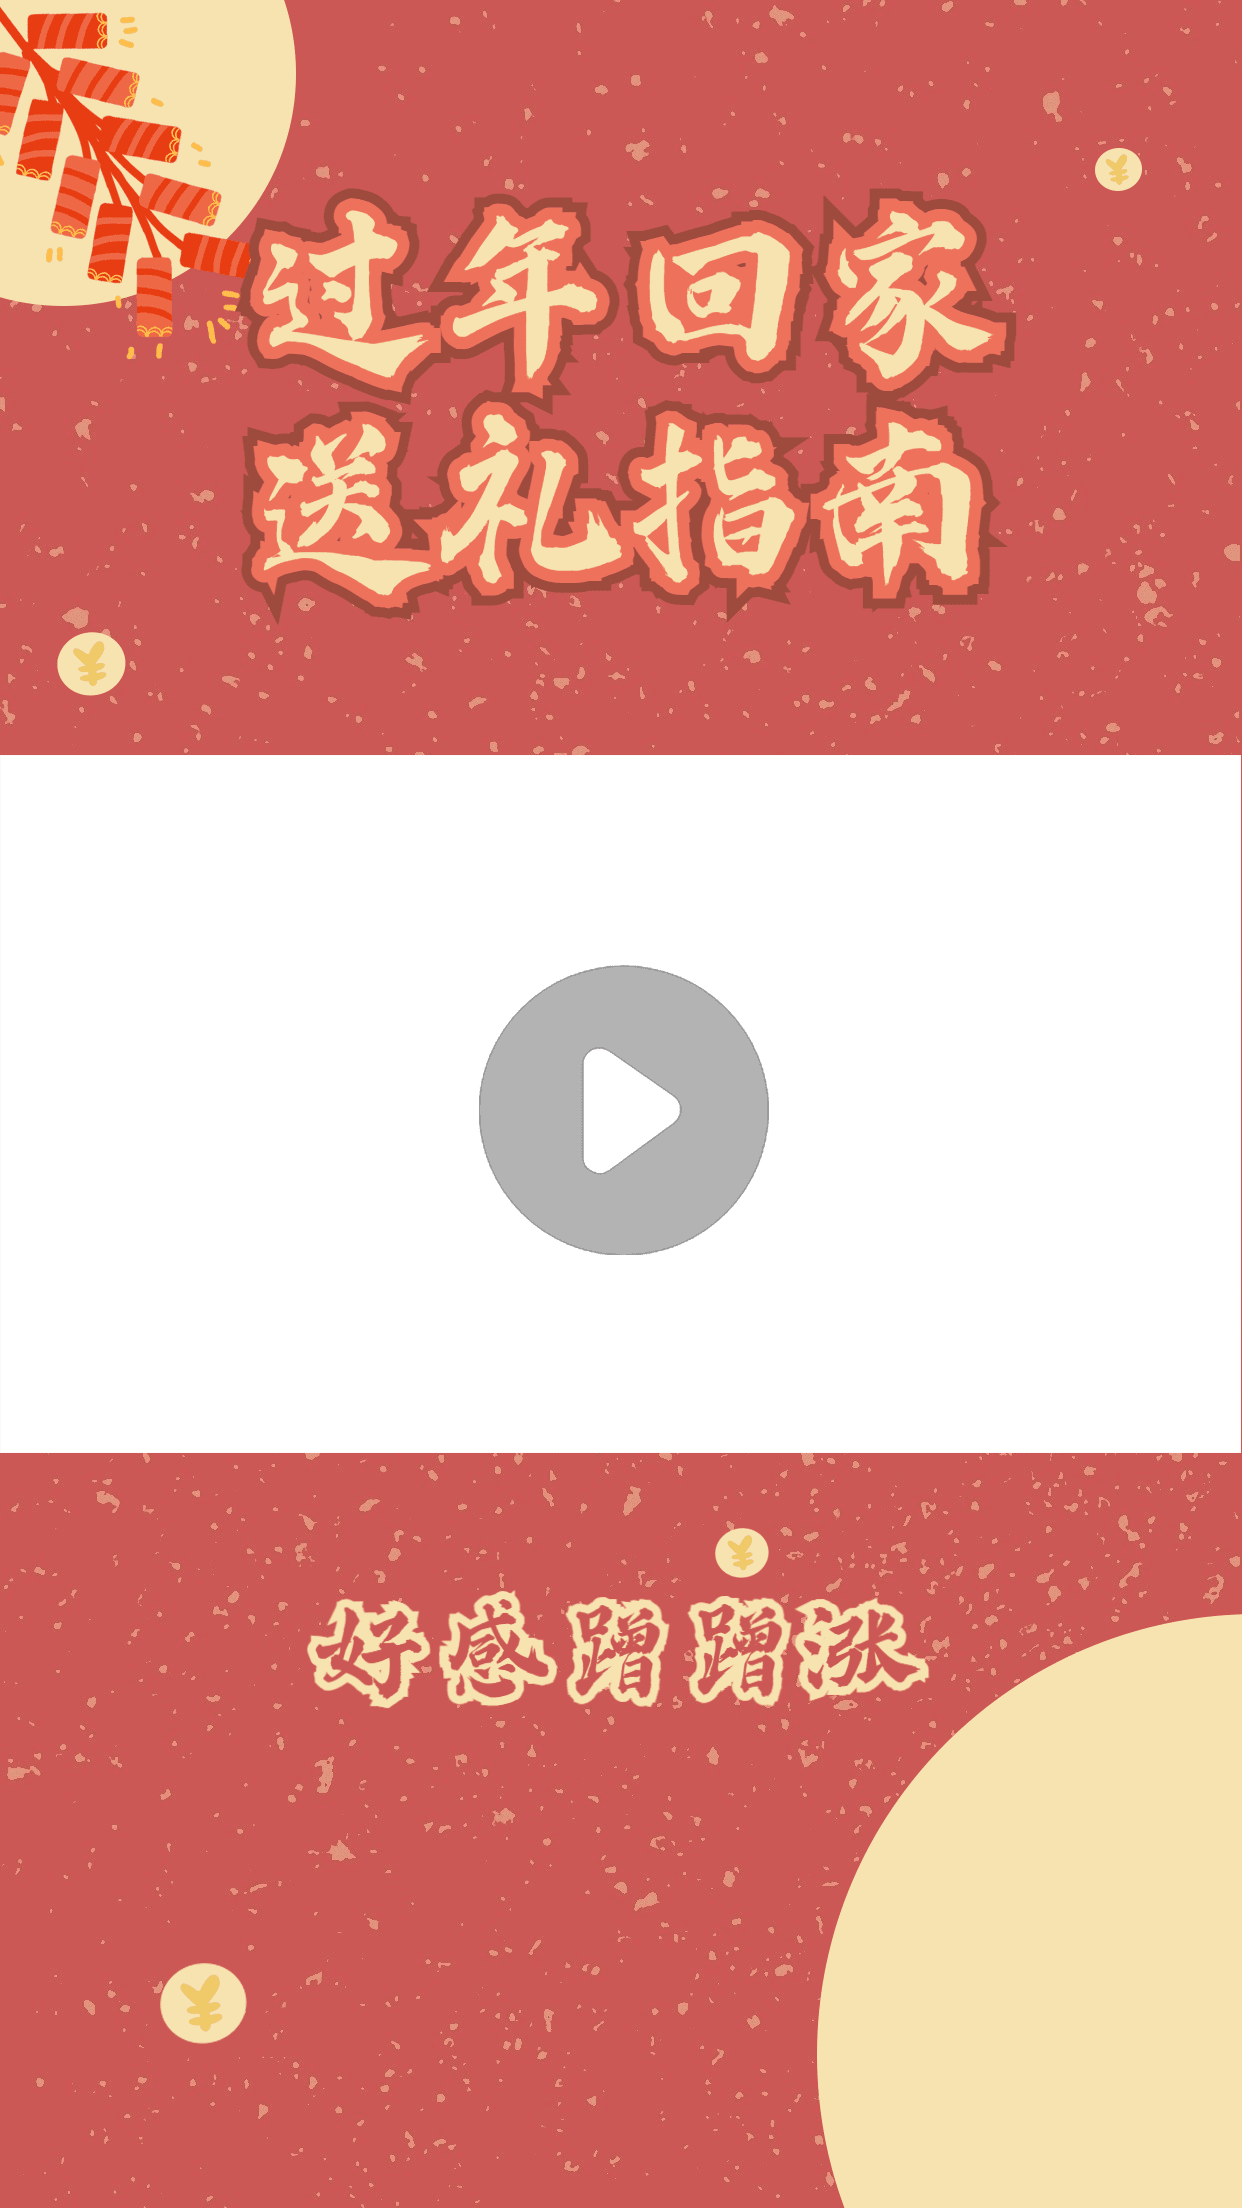 喜庆春节送礼指南视频边框预览效果